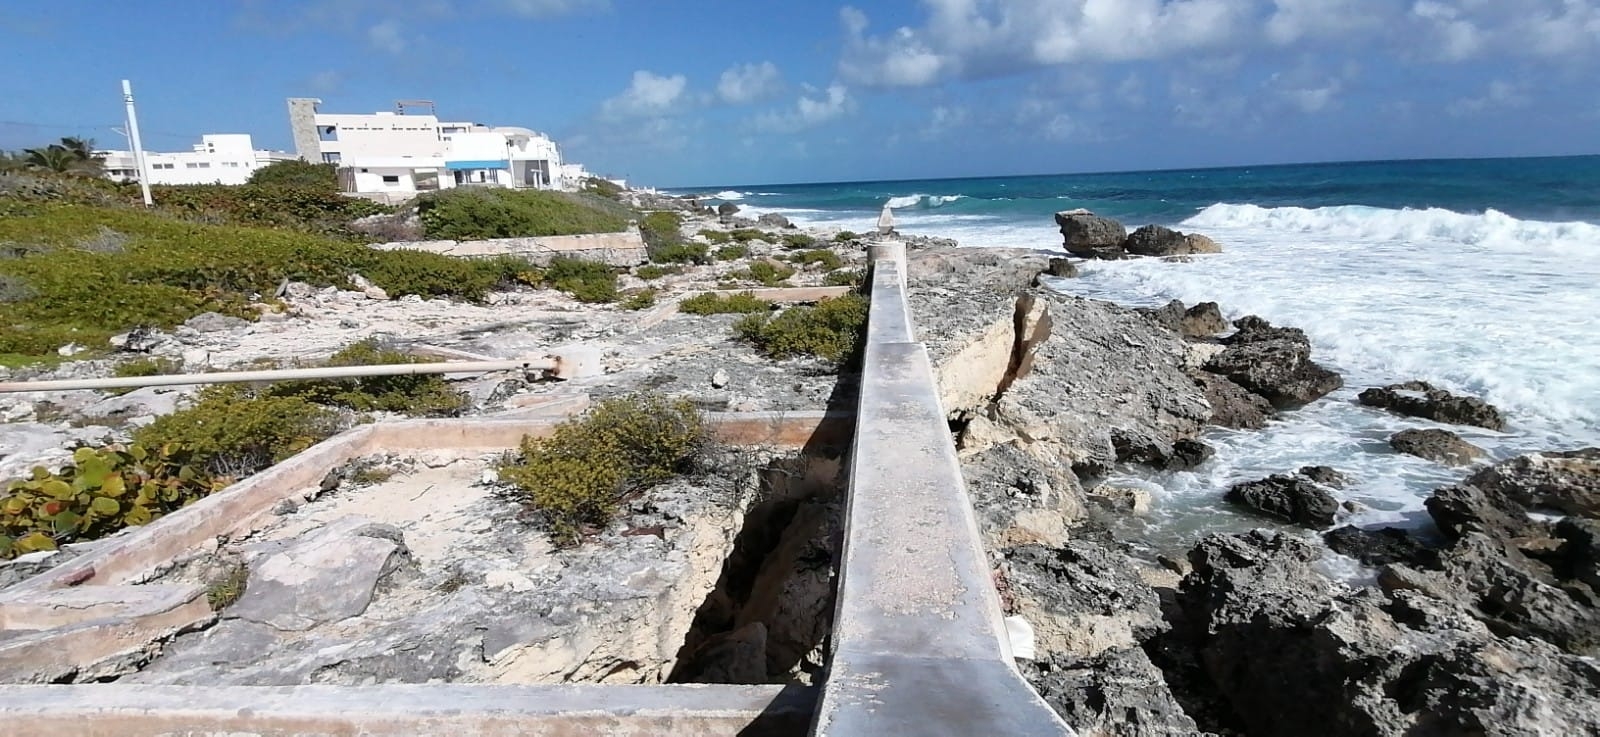 Malecón Oriente de Isla Mujeres pierde ocho metros de acantilado: FOTOS